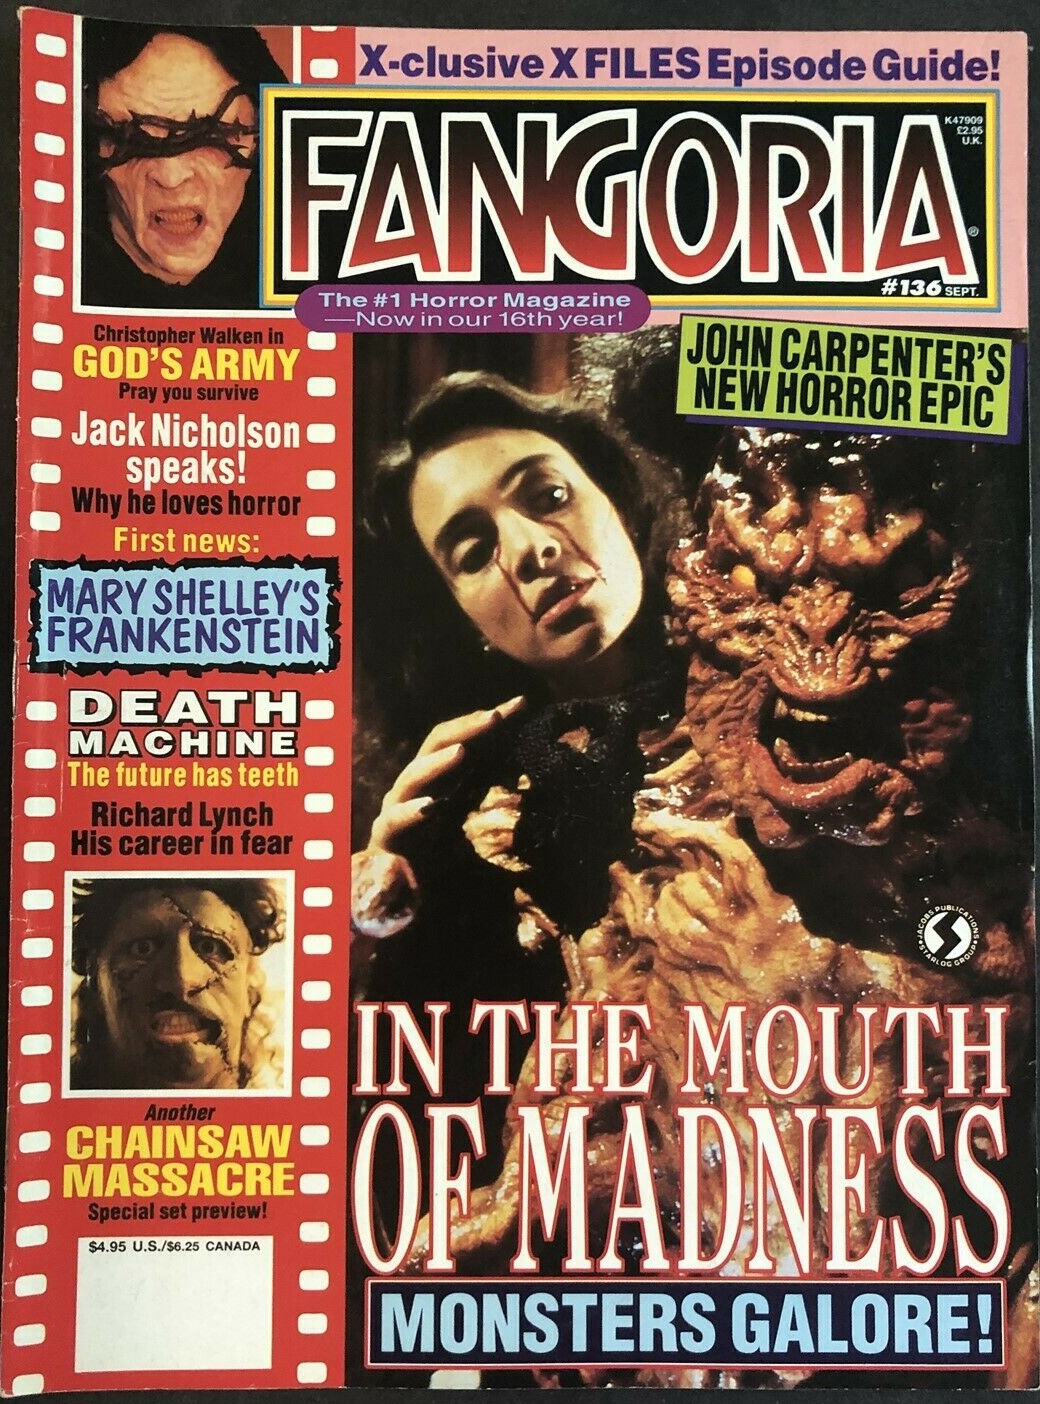 Fangoria # 136 magazine reviews